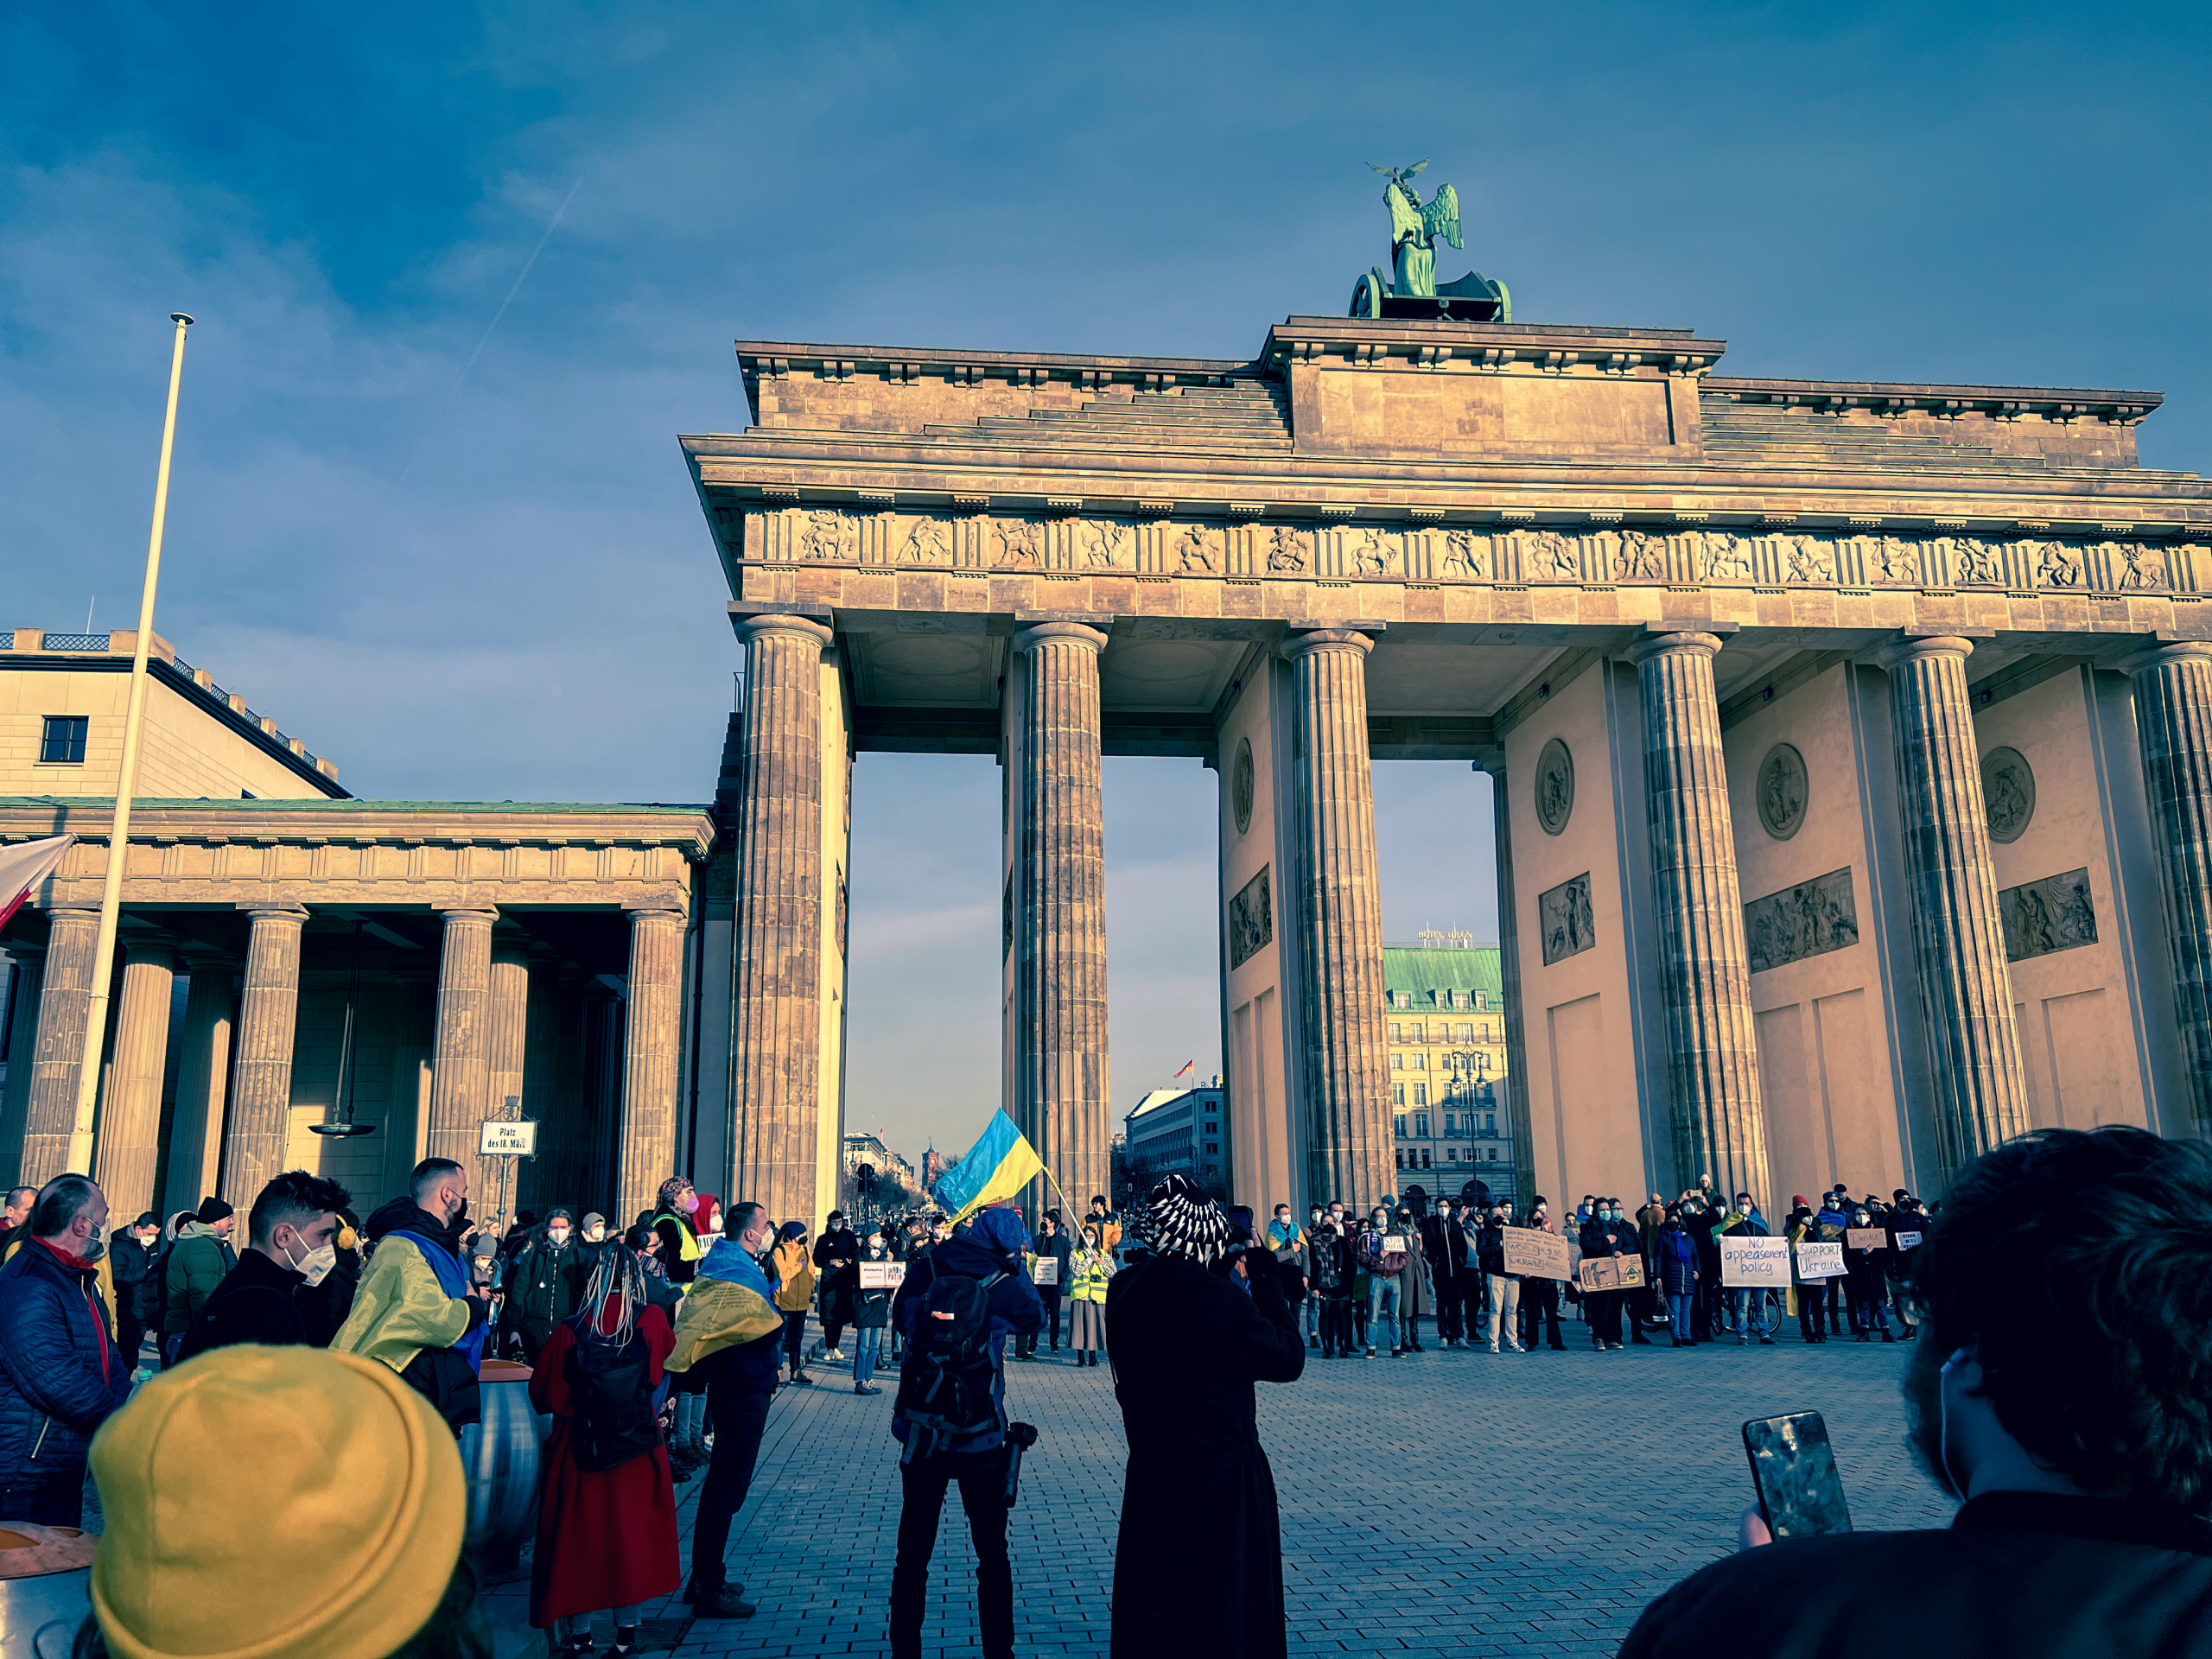 Kommunikatives Desaster: Natürlich sind ukrainische Fahnen in Berlin erlaubt